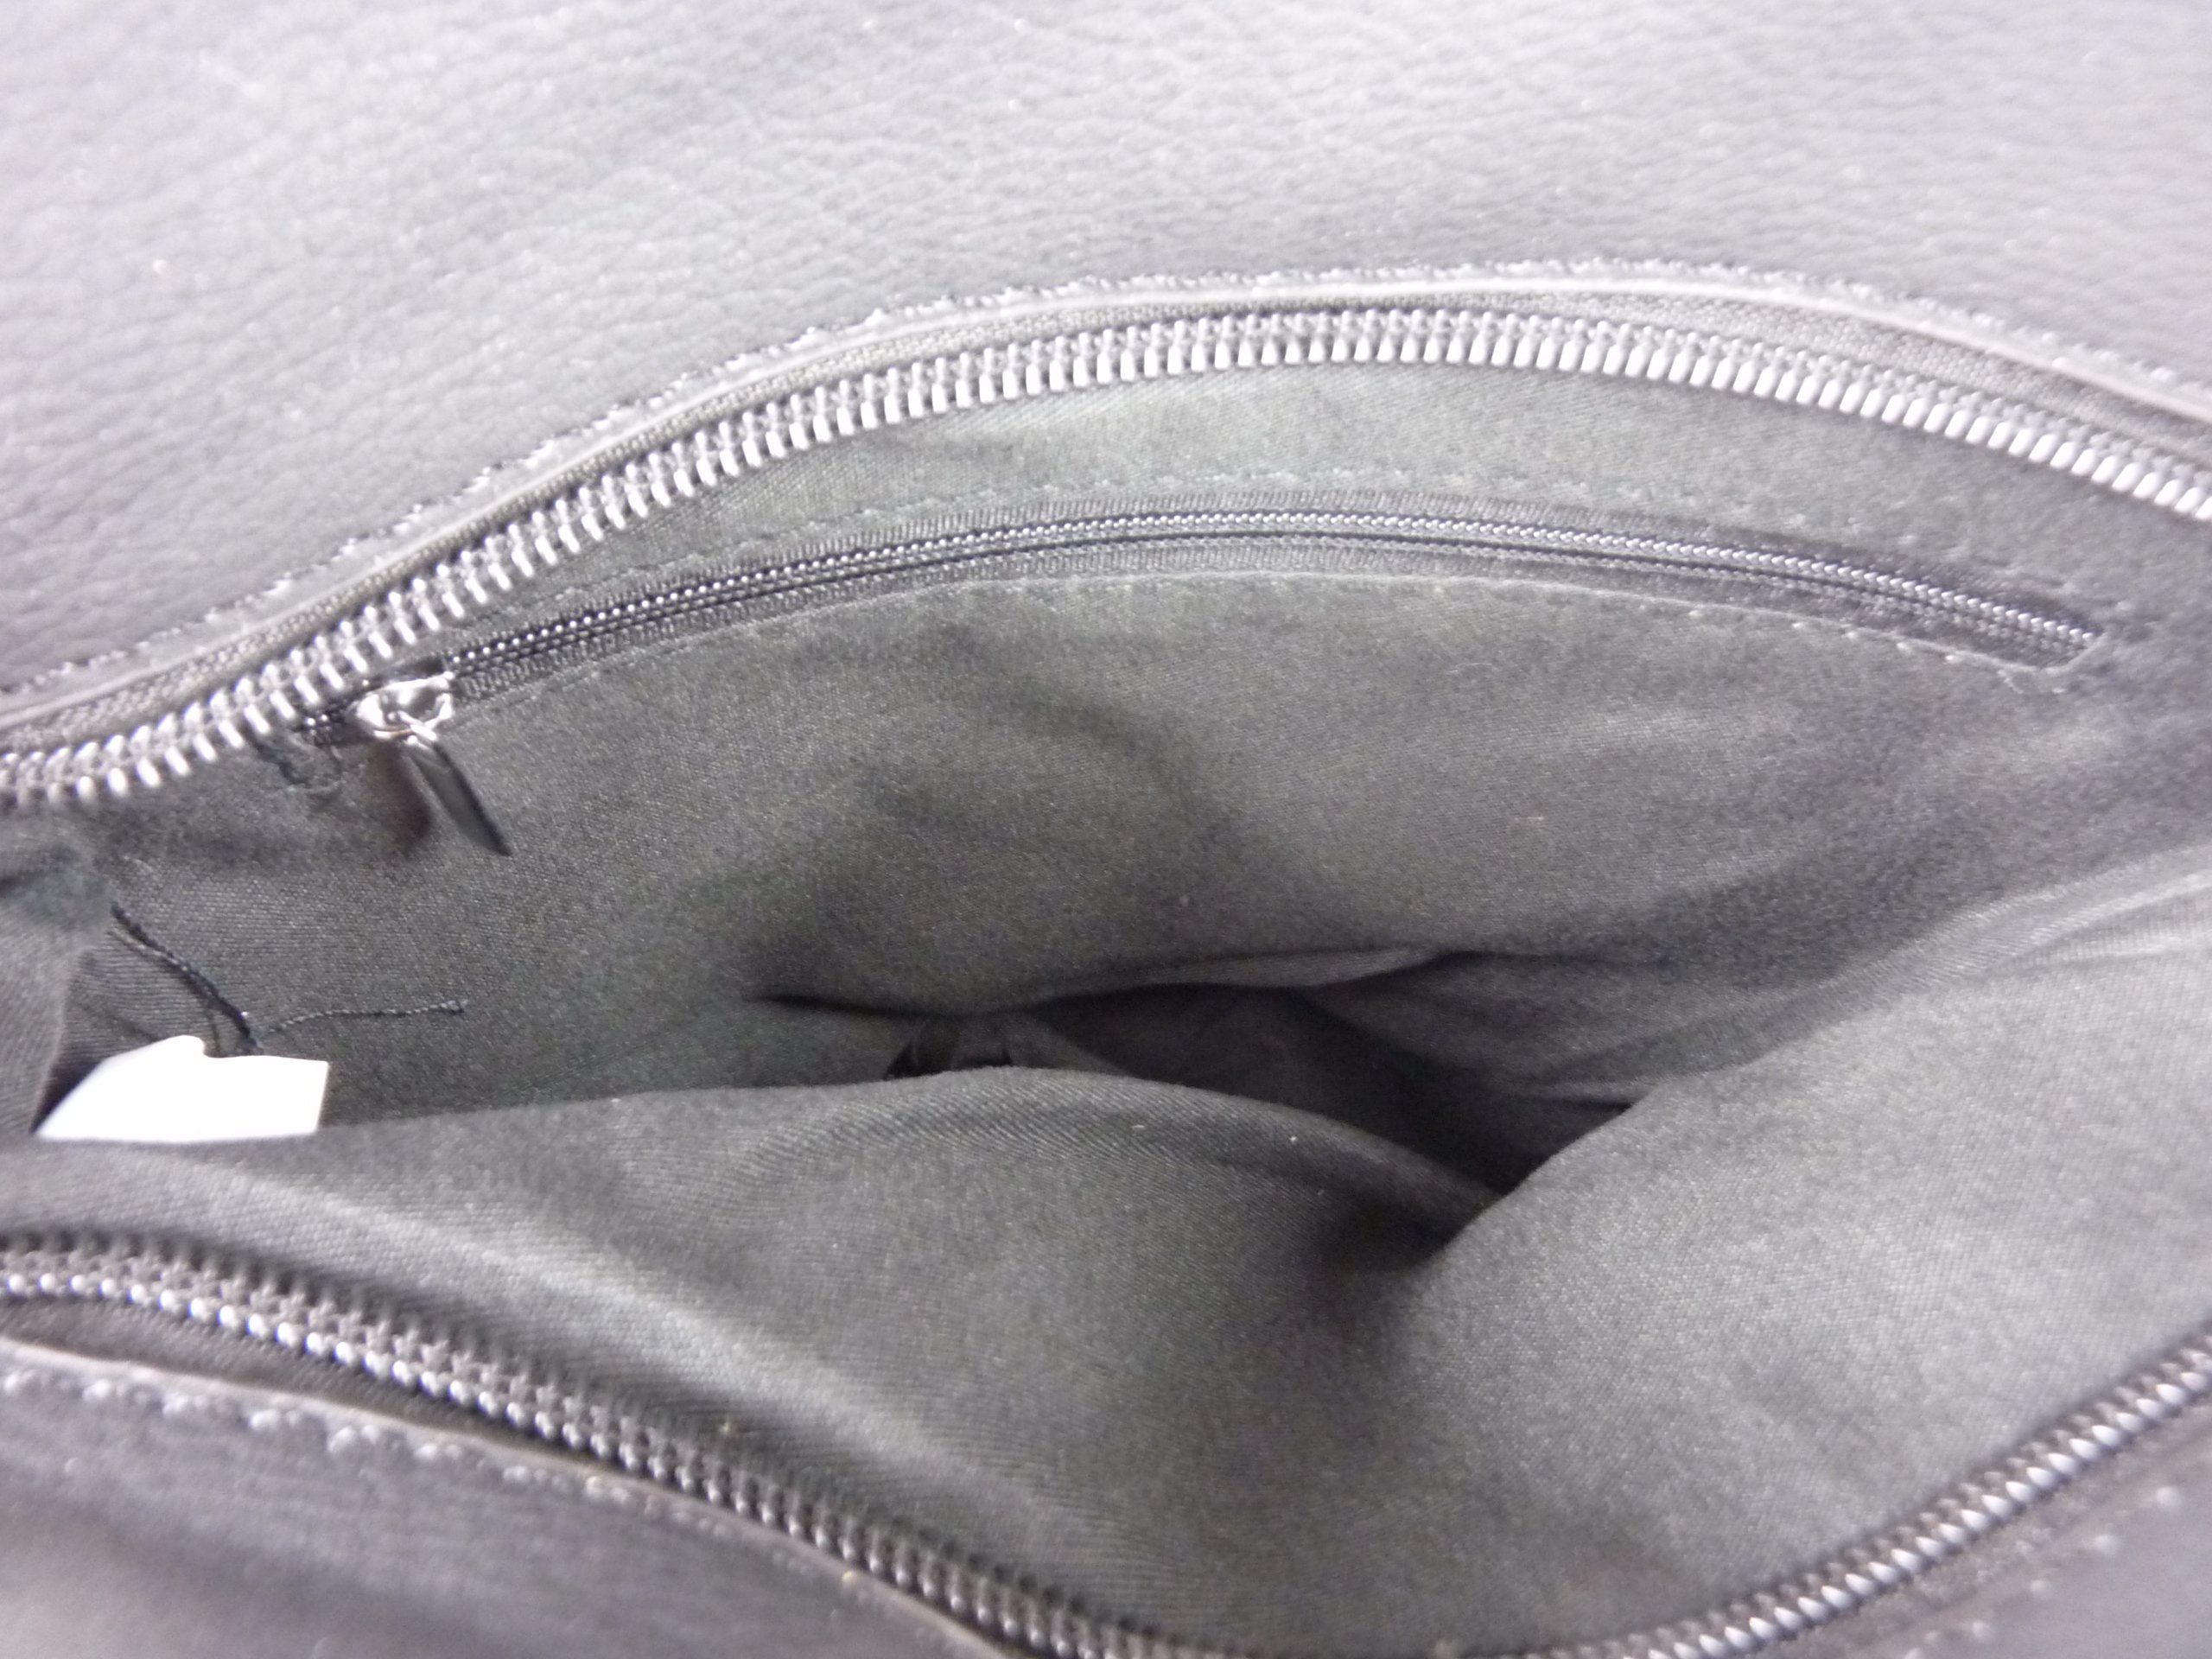 Taschen4life Umhängetasche kleine Tasche zum schwarz/weiß tragbar, umhängen Schultertasche H0447, cross als over Streifen & Muster zweifarbiges